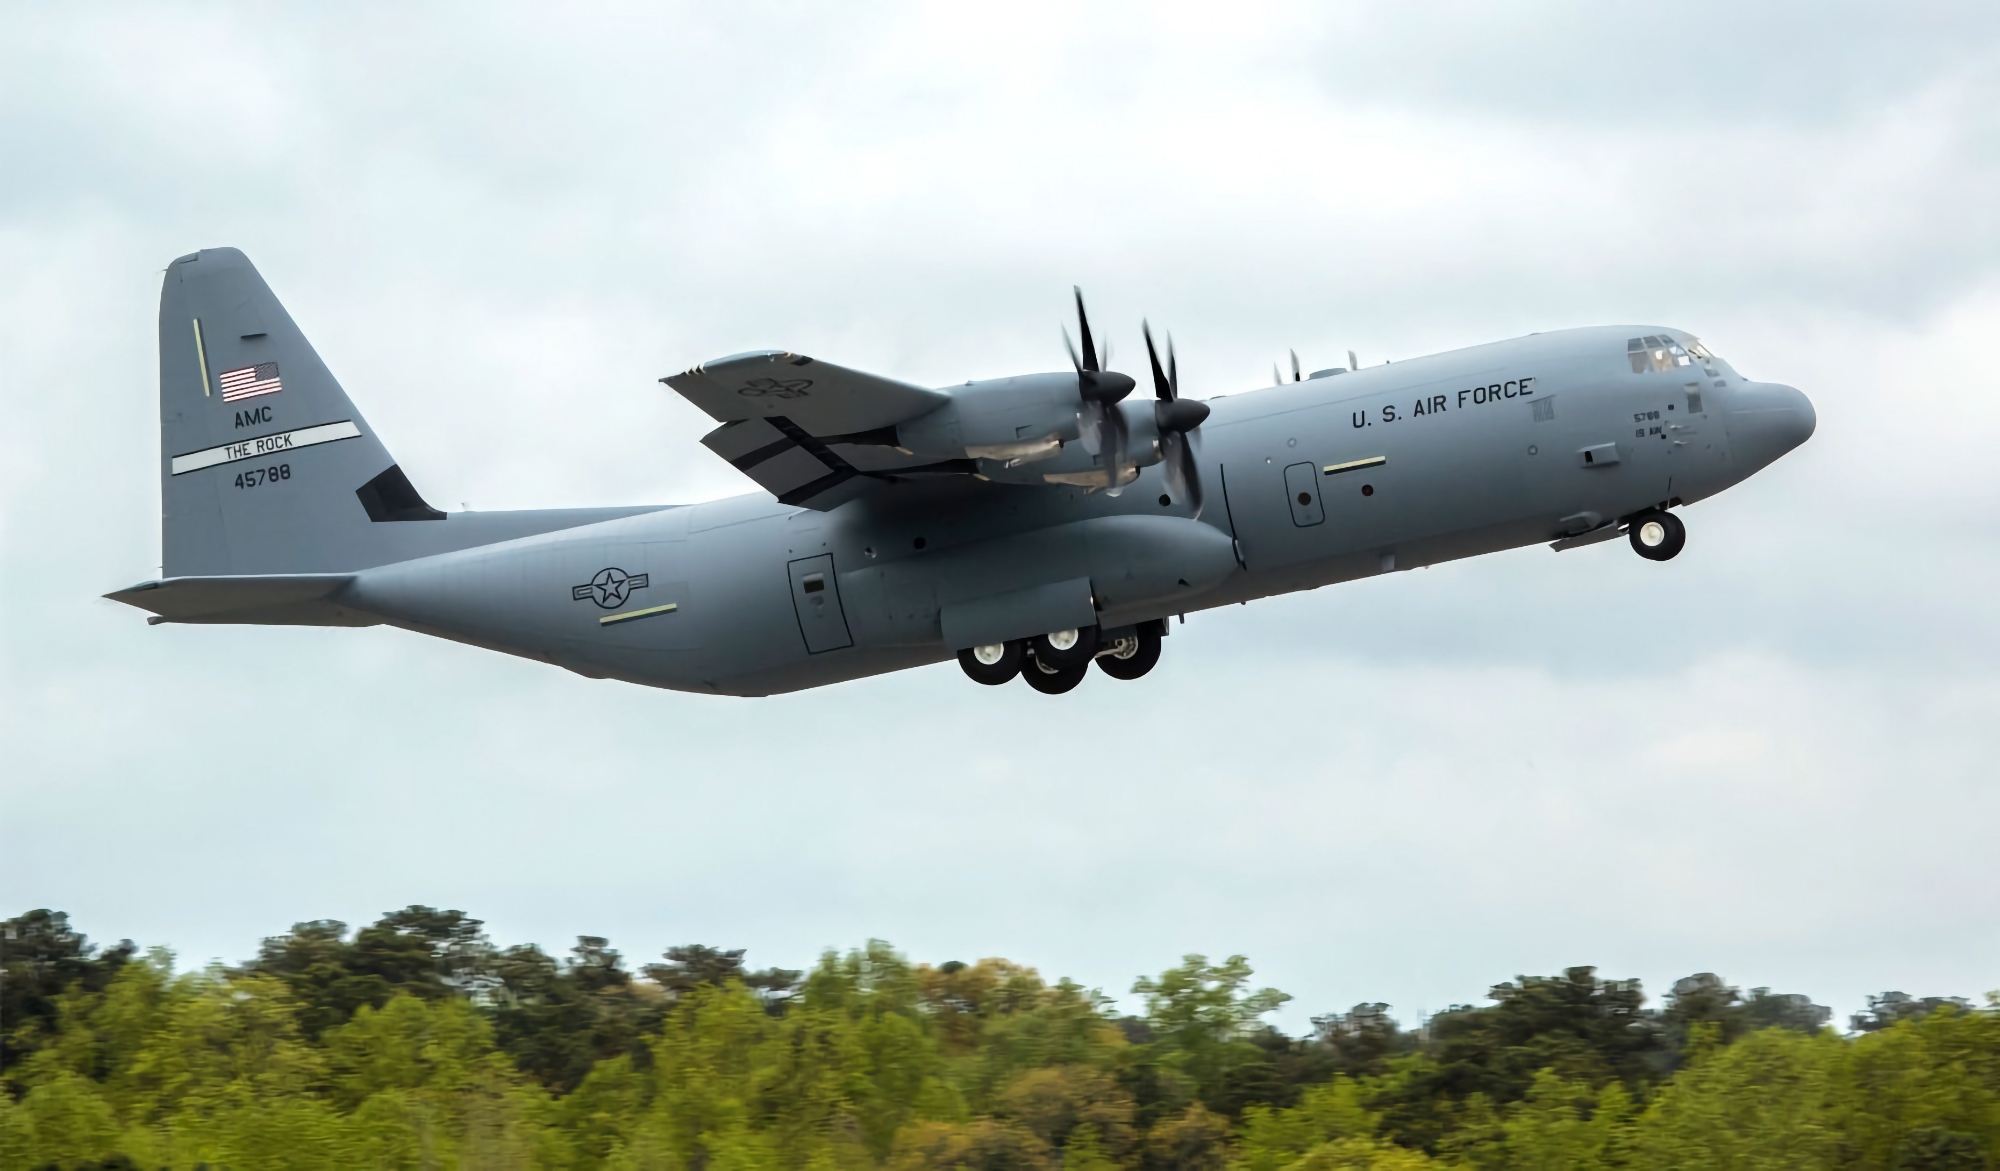 Kontrakt värt 390 miljoner USD: Filippinerna köper C-130 Super Hercules militära transportflygplan från Lockheed Martin